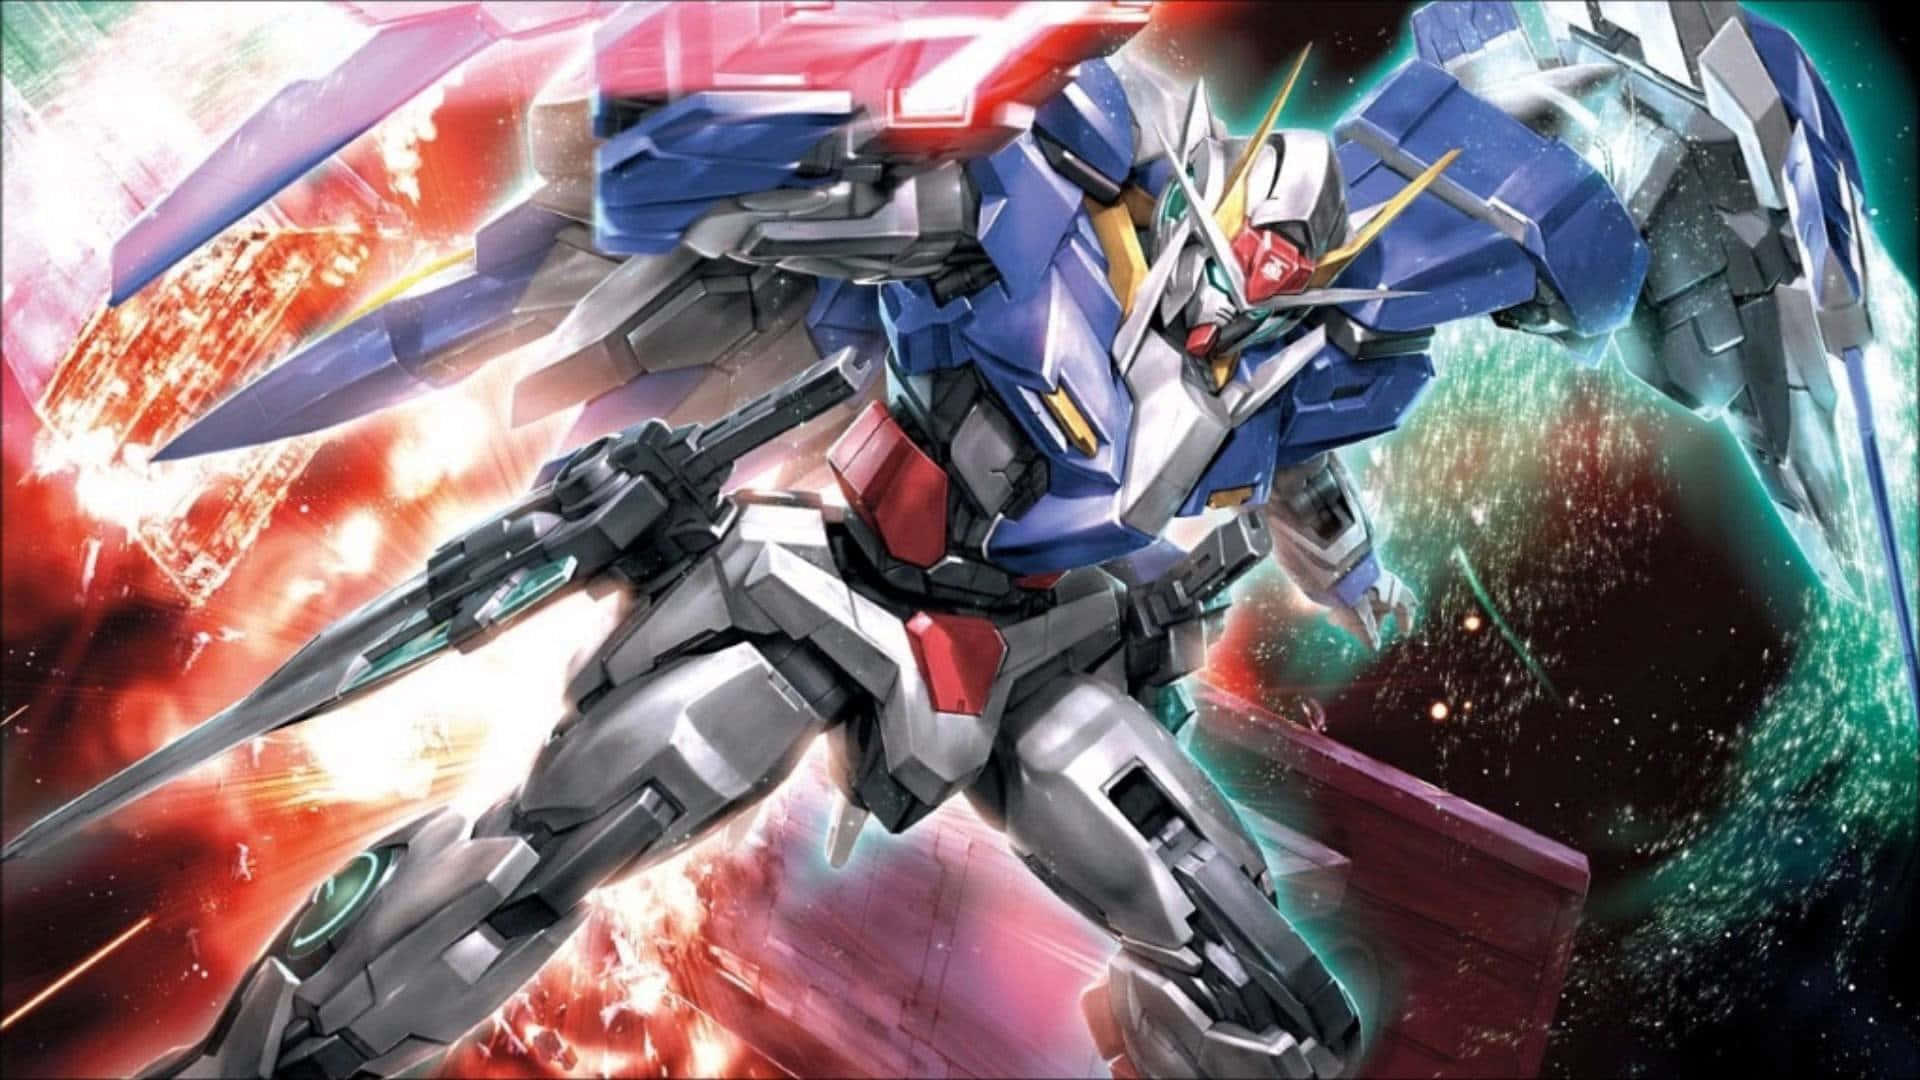 Dasneueste Modell In Der Gundam-serie - Der Rx-78-2!